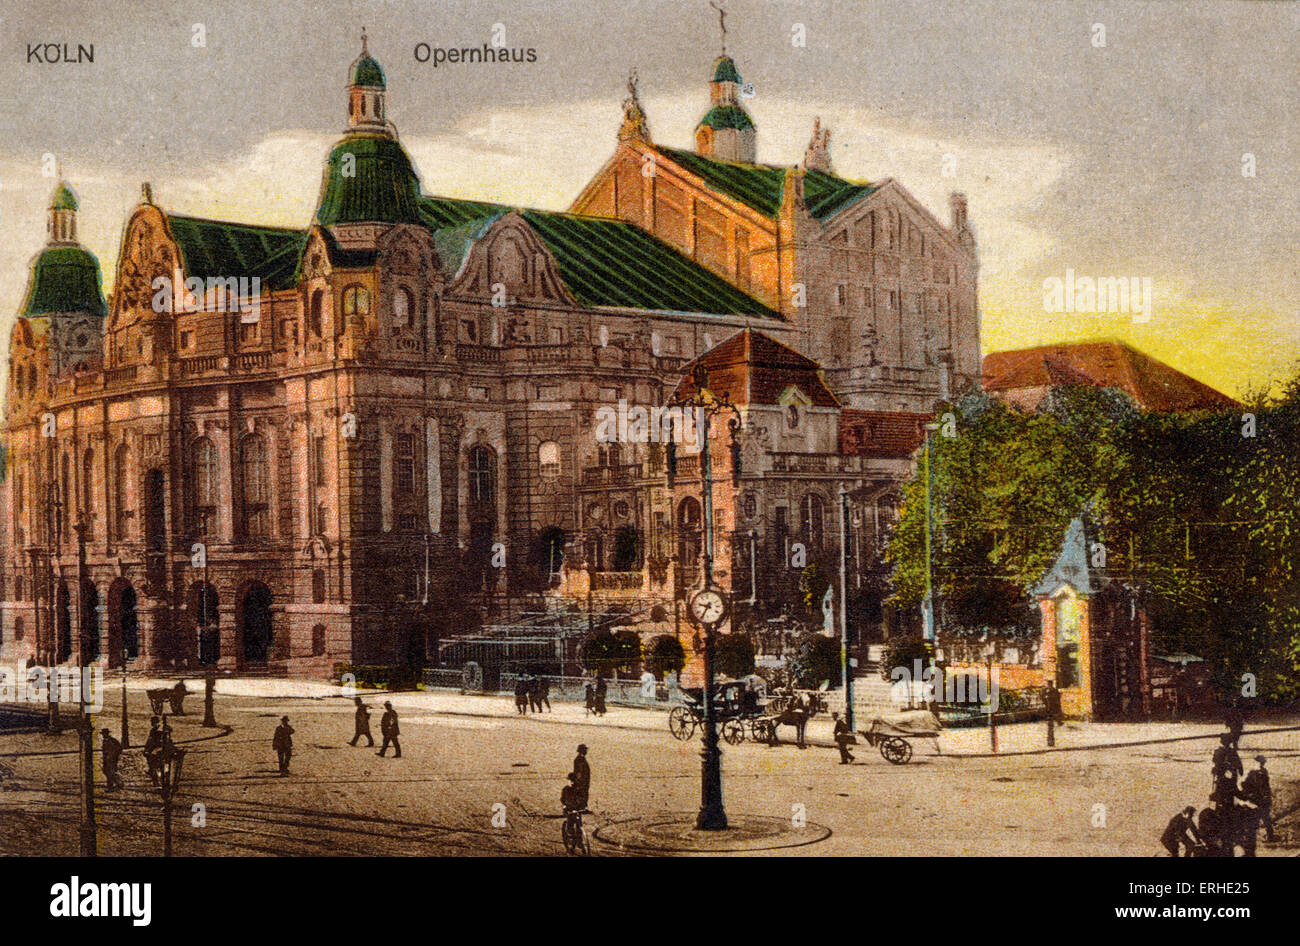 Cologne / Koln / Coln Opera House au début du xxe siècle carte postale teinté Banque D'Images